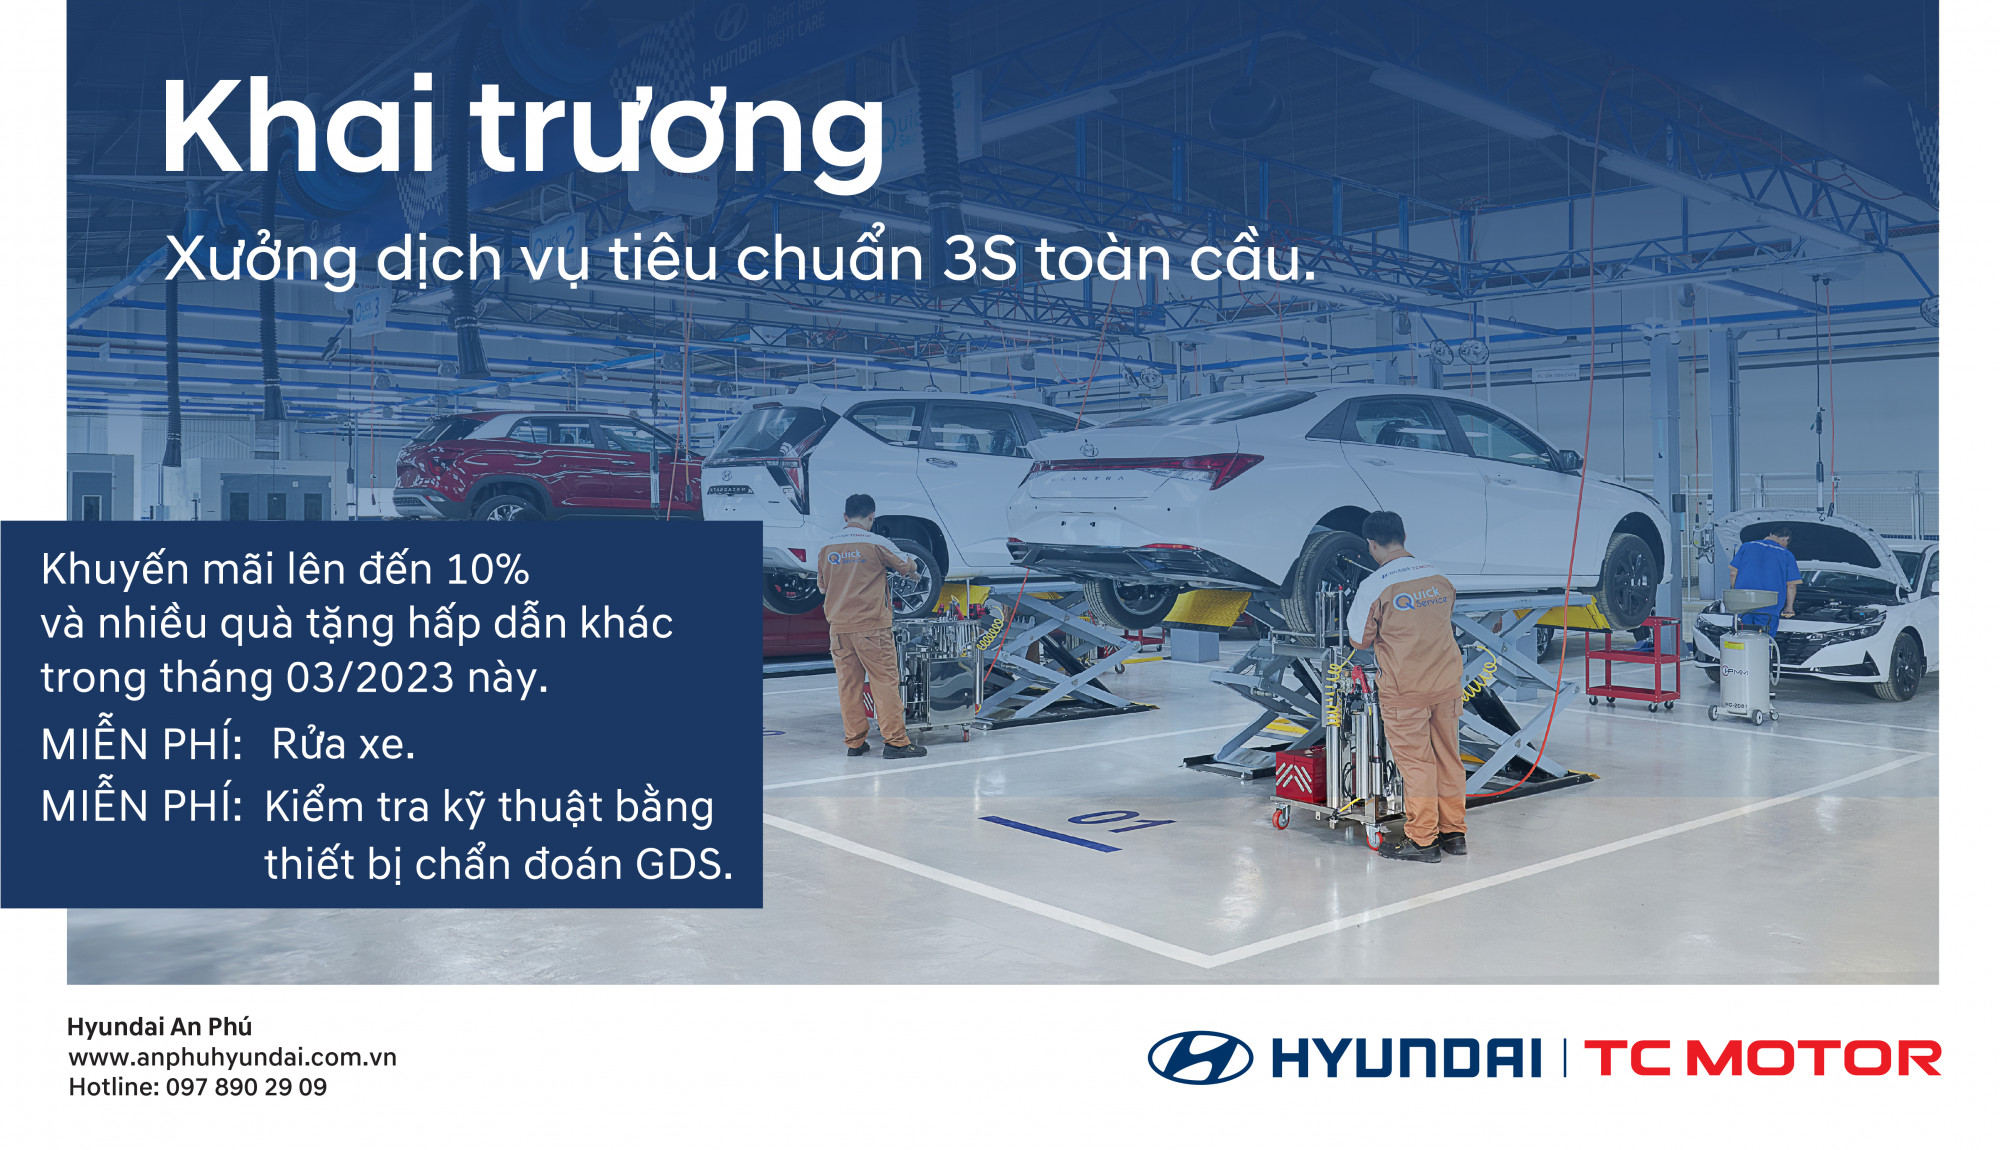 Khai trương Xưởng dịch vụ tiêu chuẩn 3S toàn cầu của Hyundai An Phú